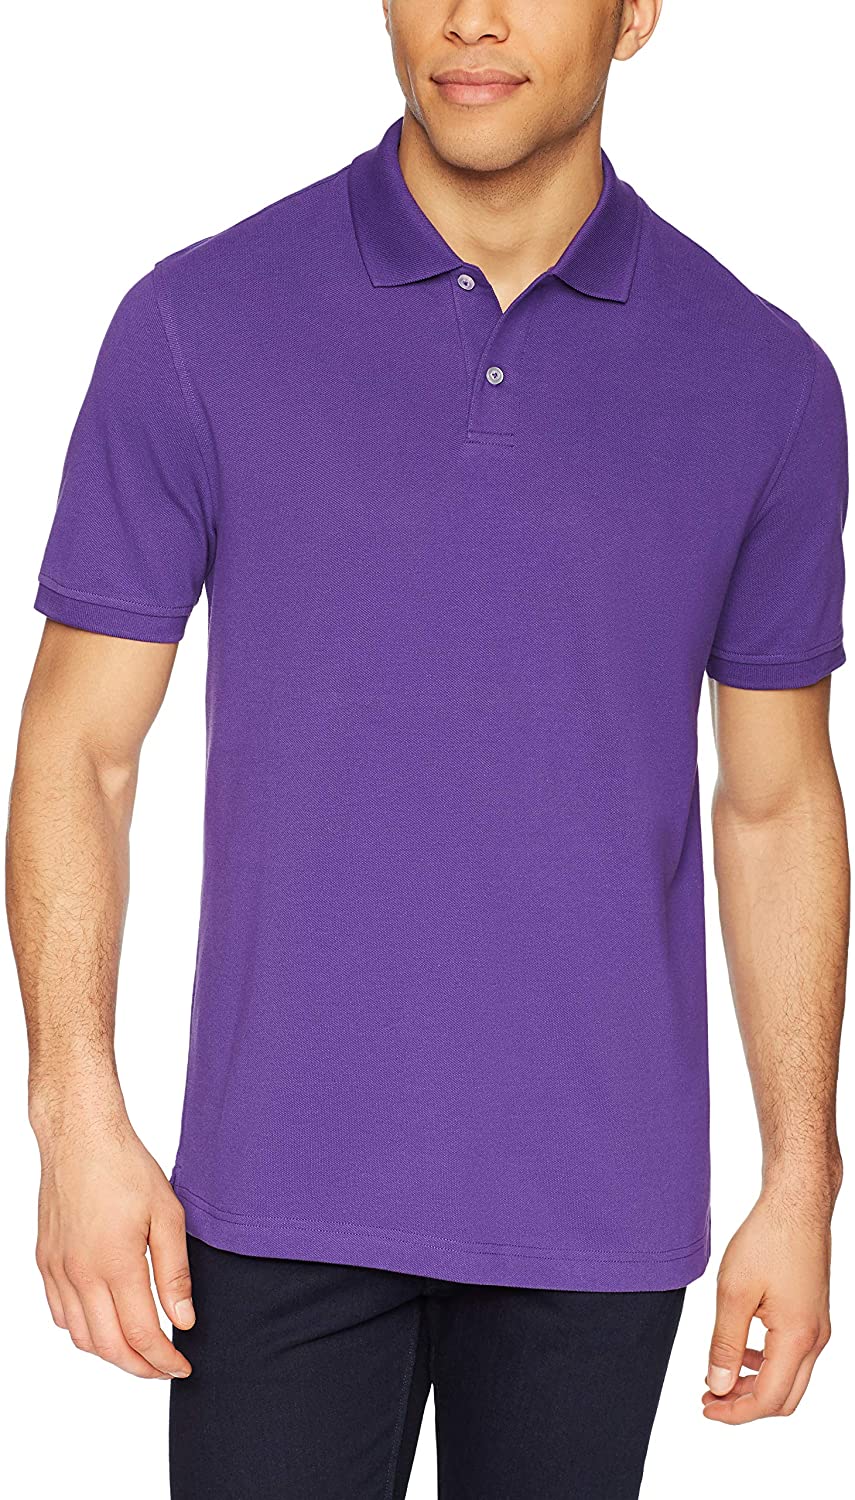 Essentials Men's Slim-fit Cotton Pique Polo Shirt